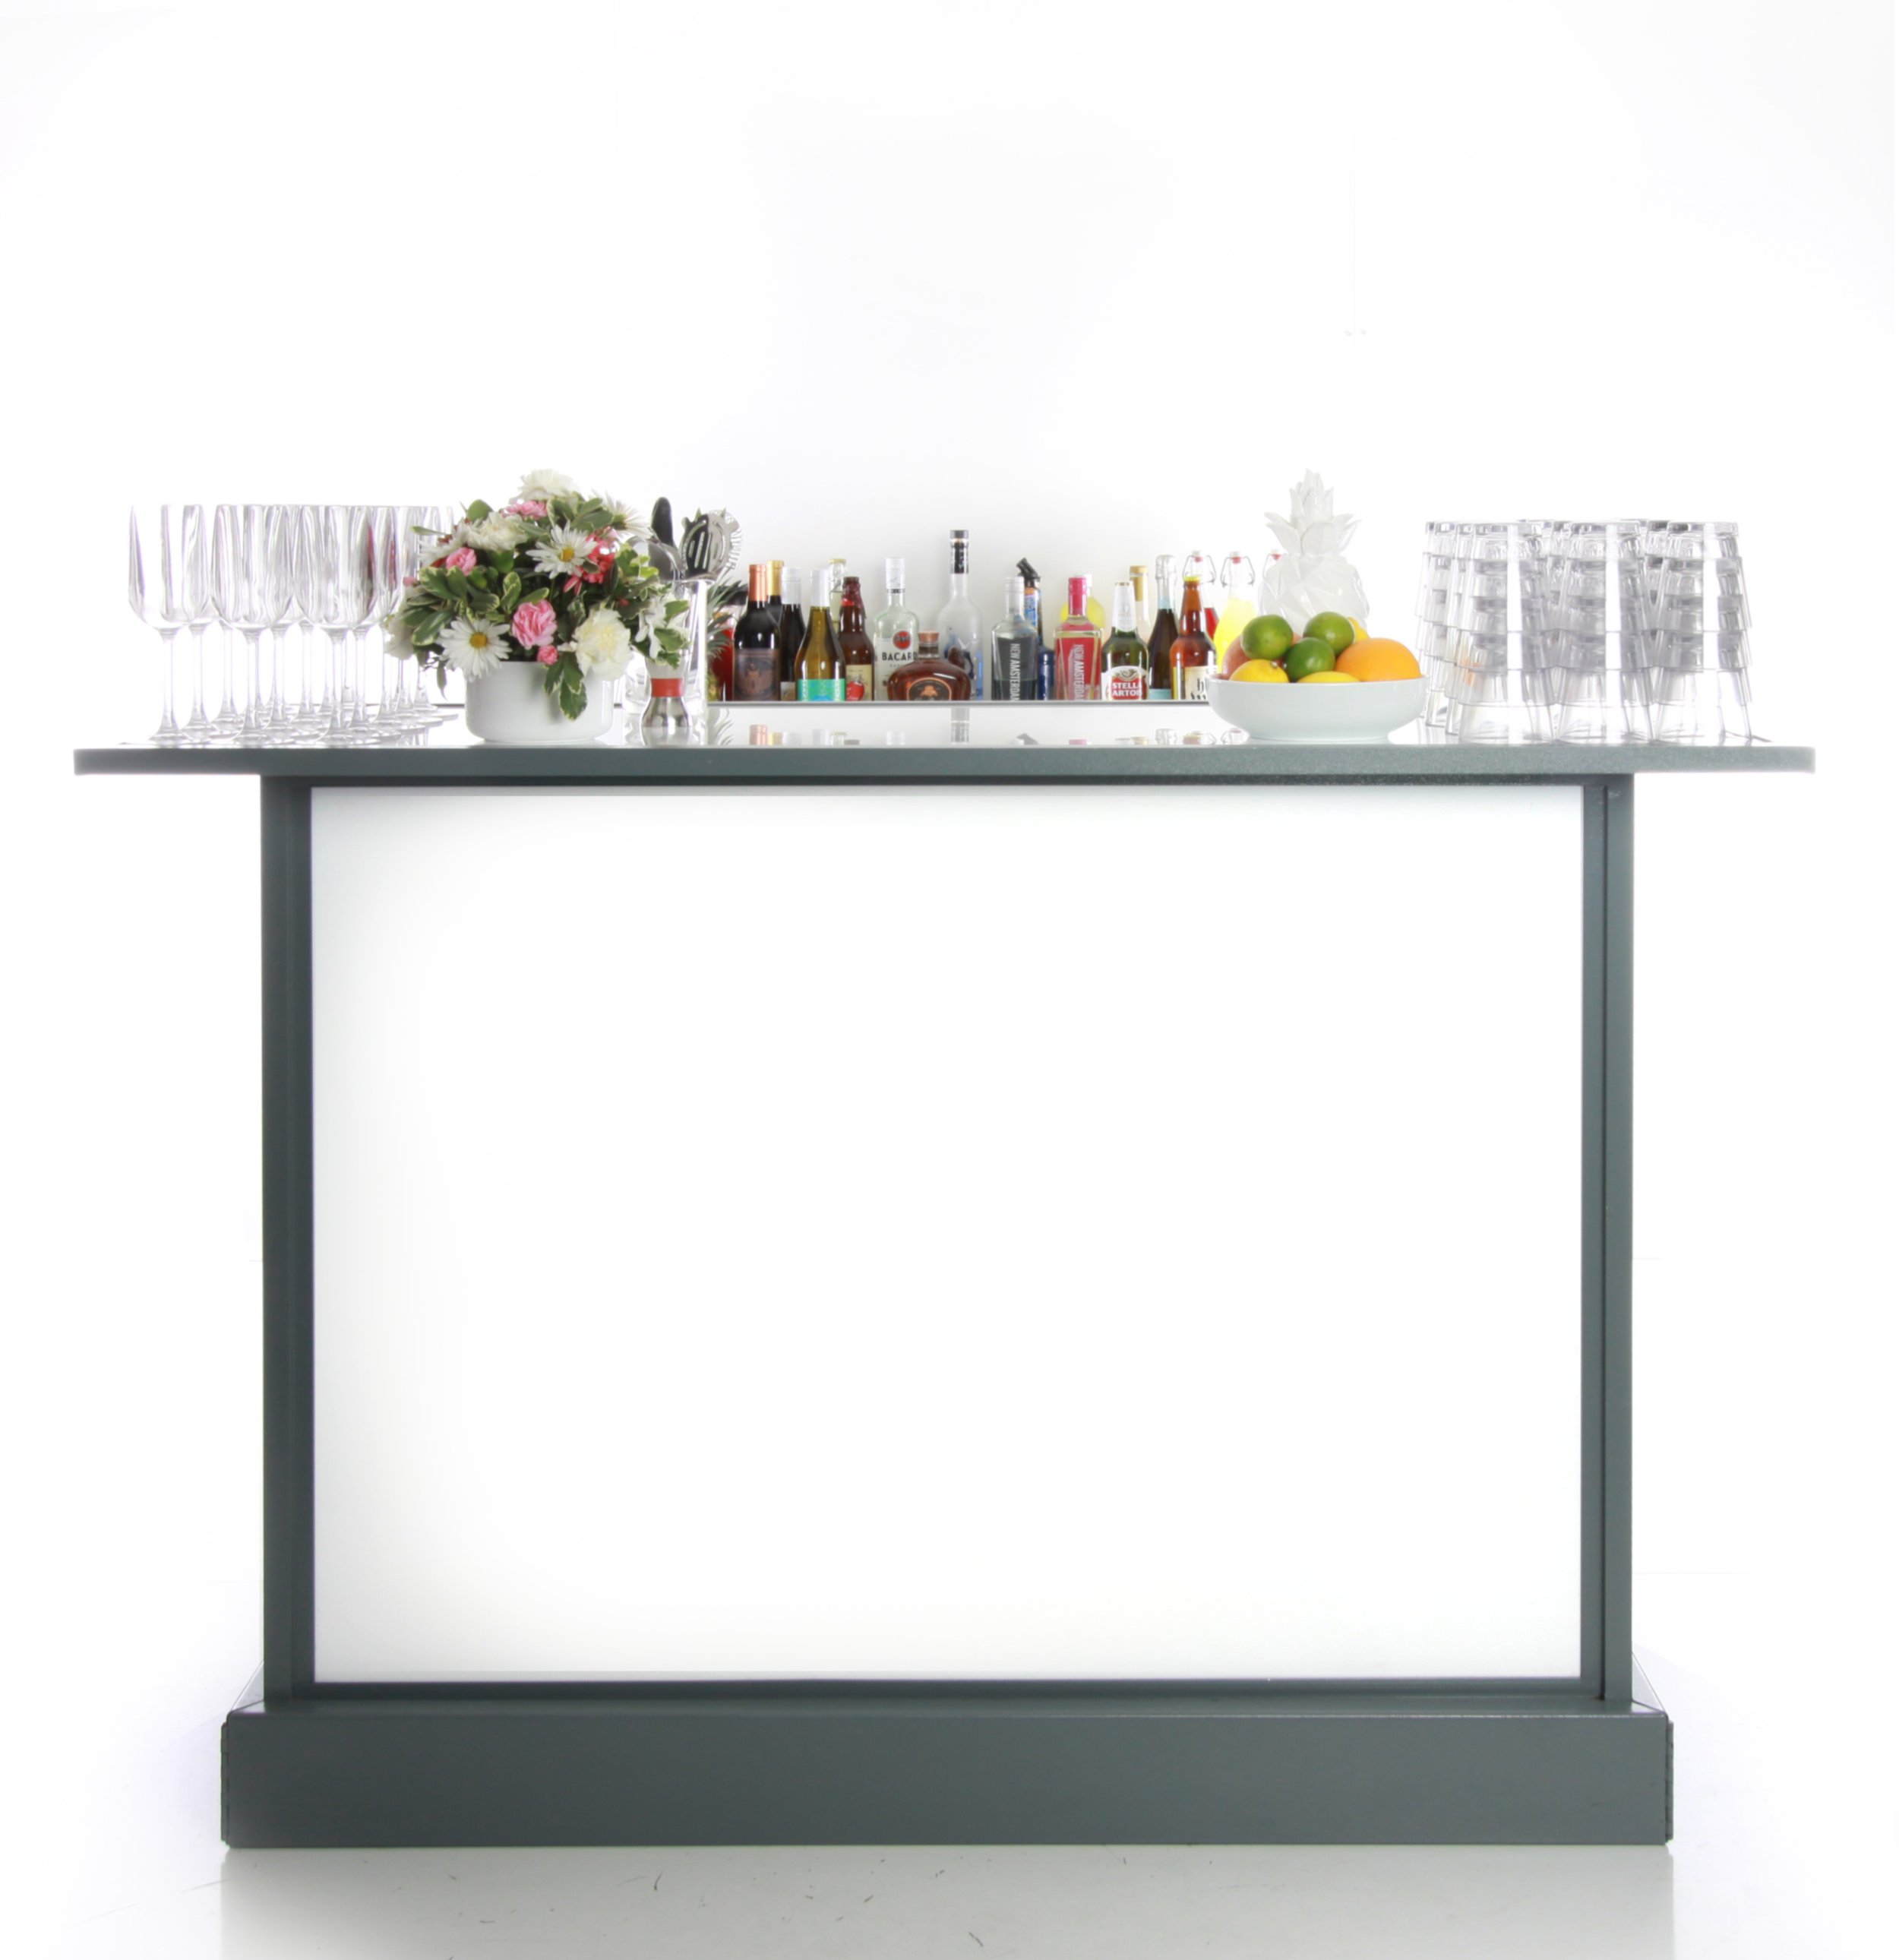 5 ft. craft bar (white plexiglass) - $250